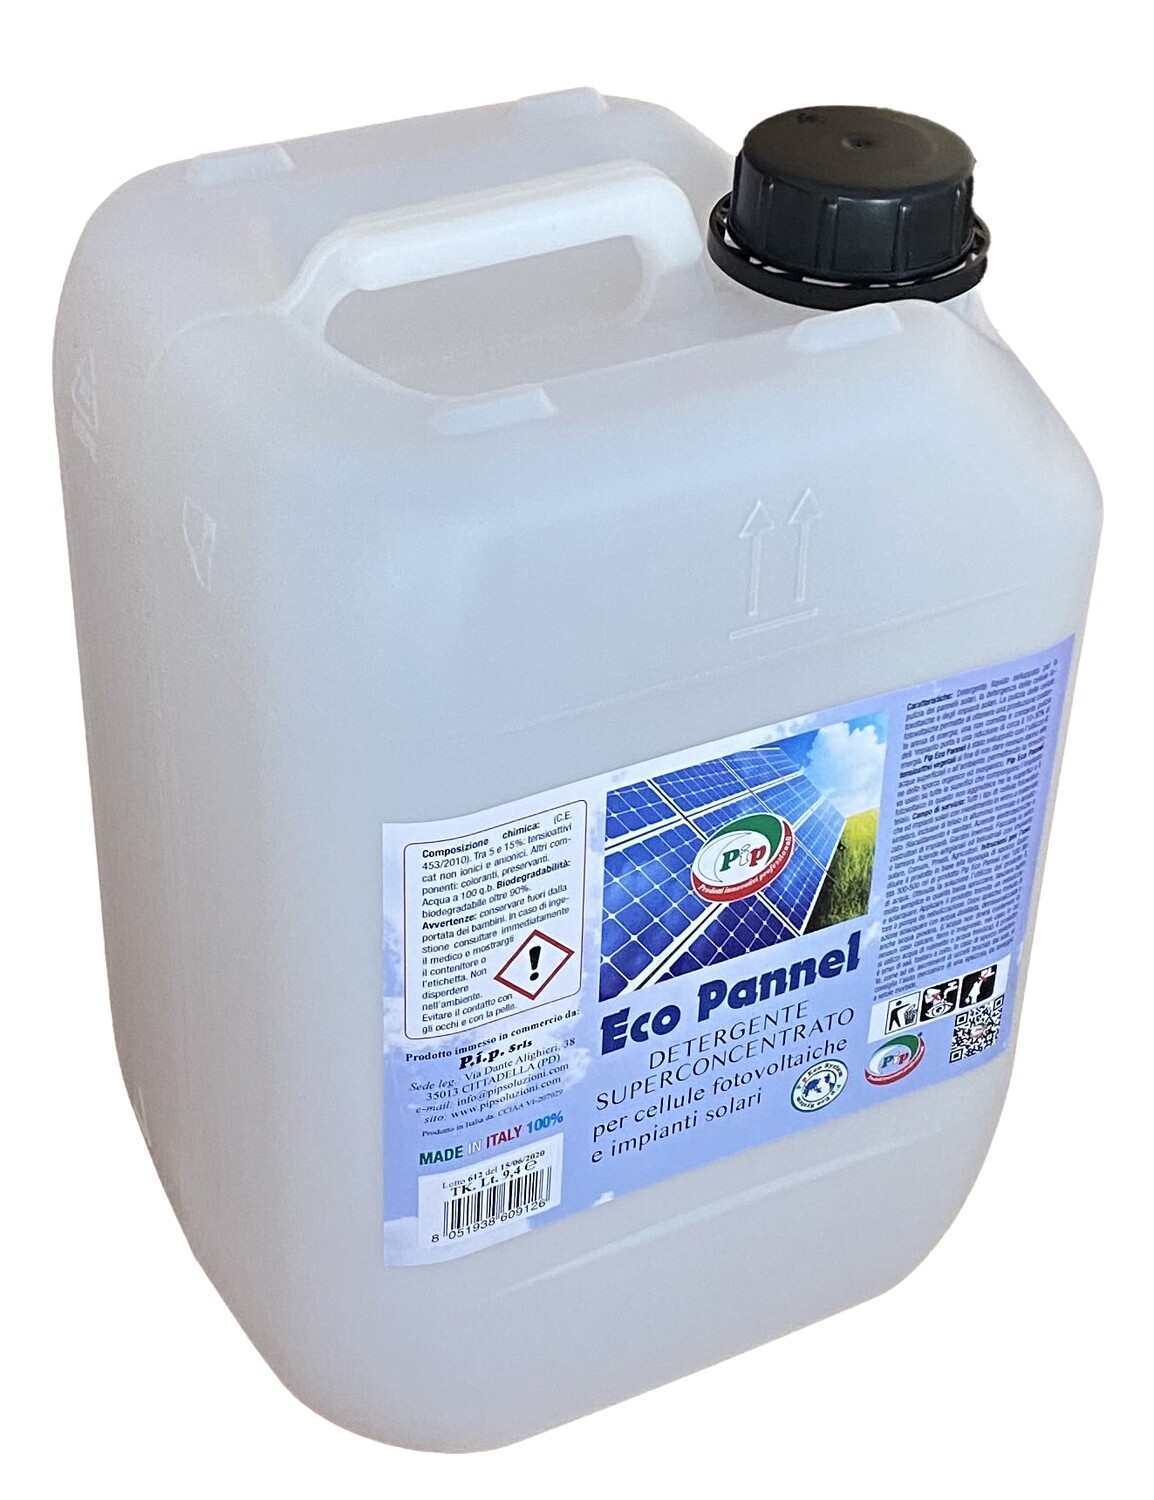 Detergente per Pannelli Fotovoltaici Ecologico Superconcentrato. Pip Eco Pannel TK. UN KG.4,7